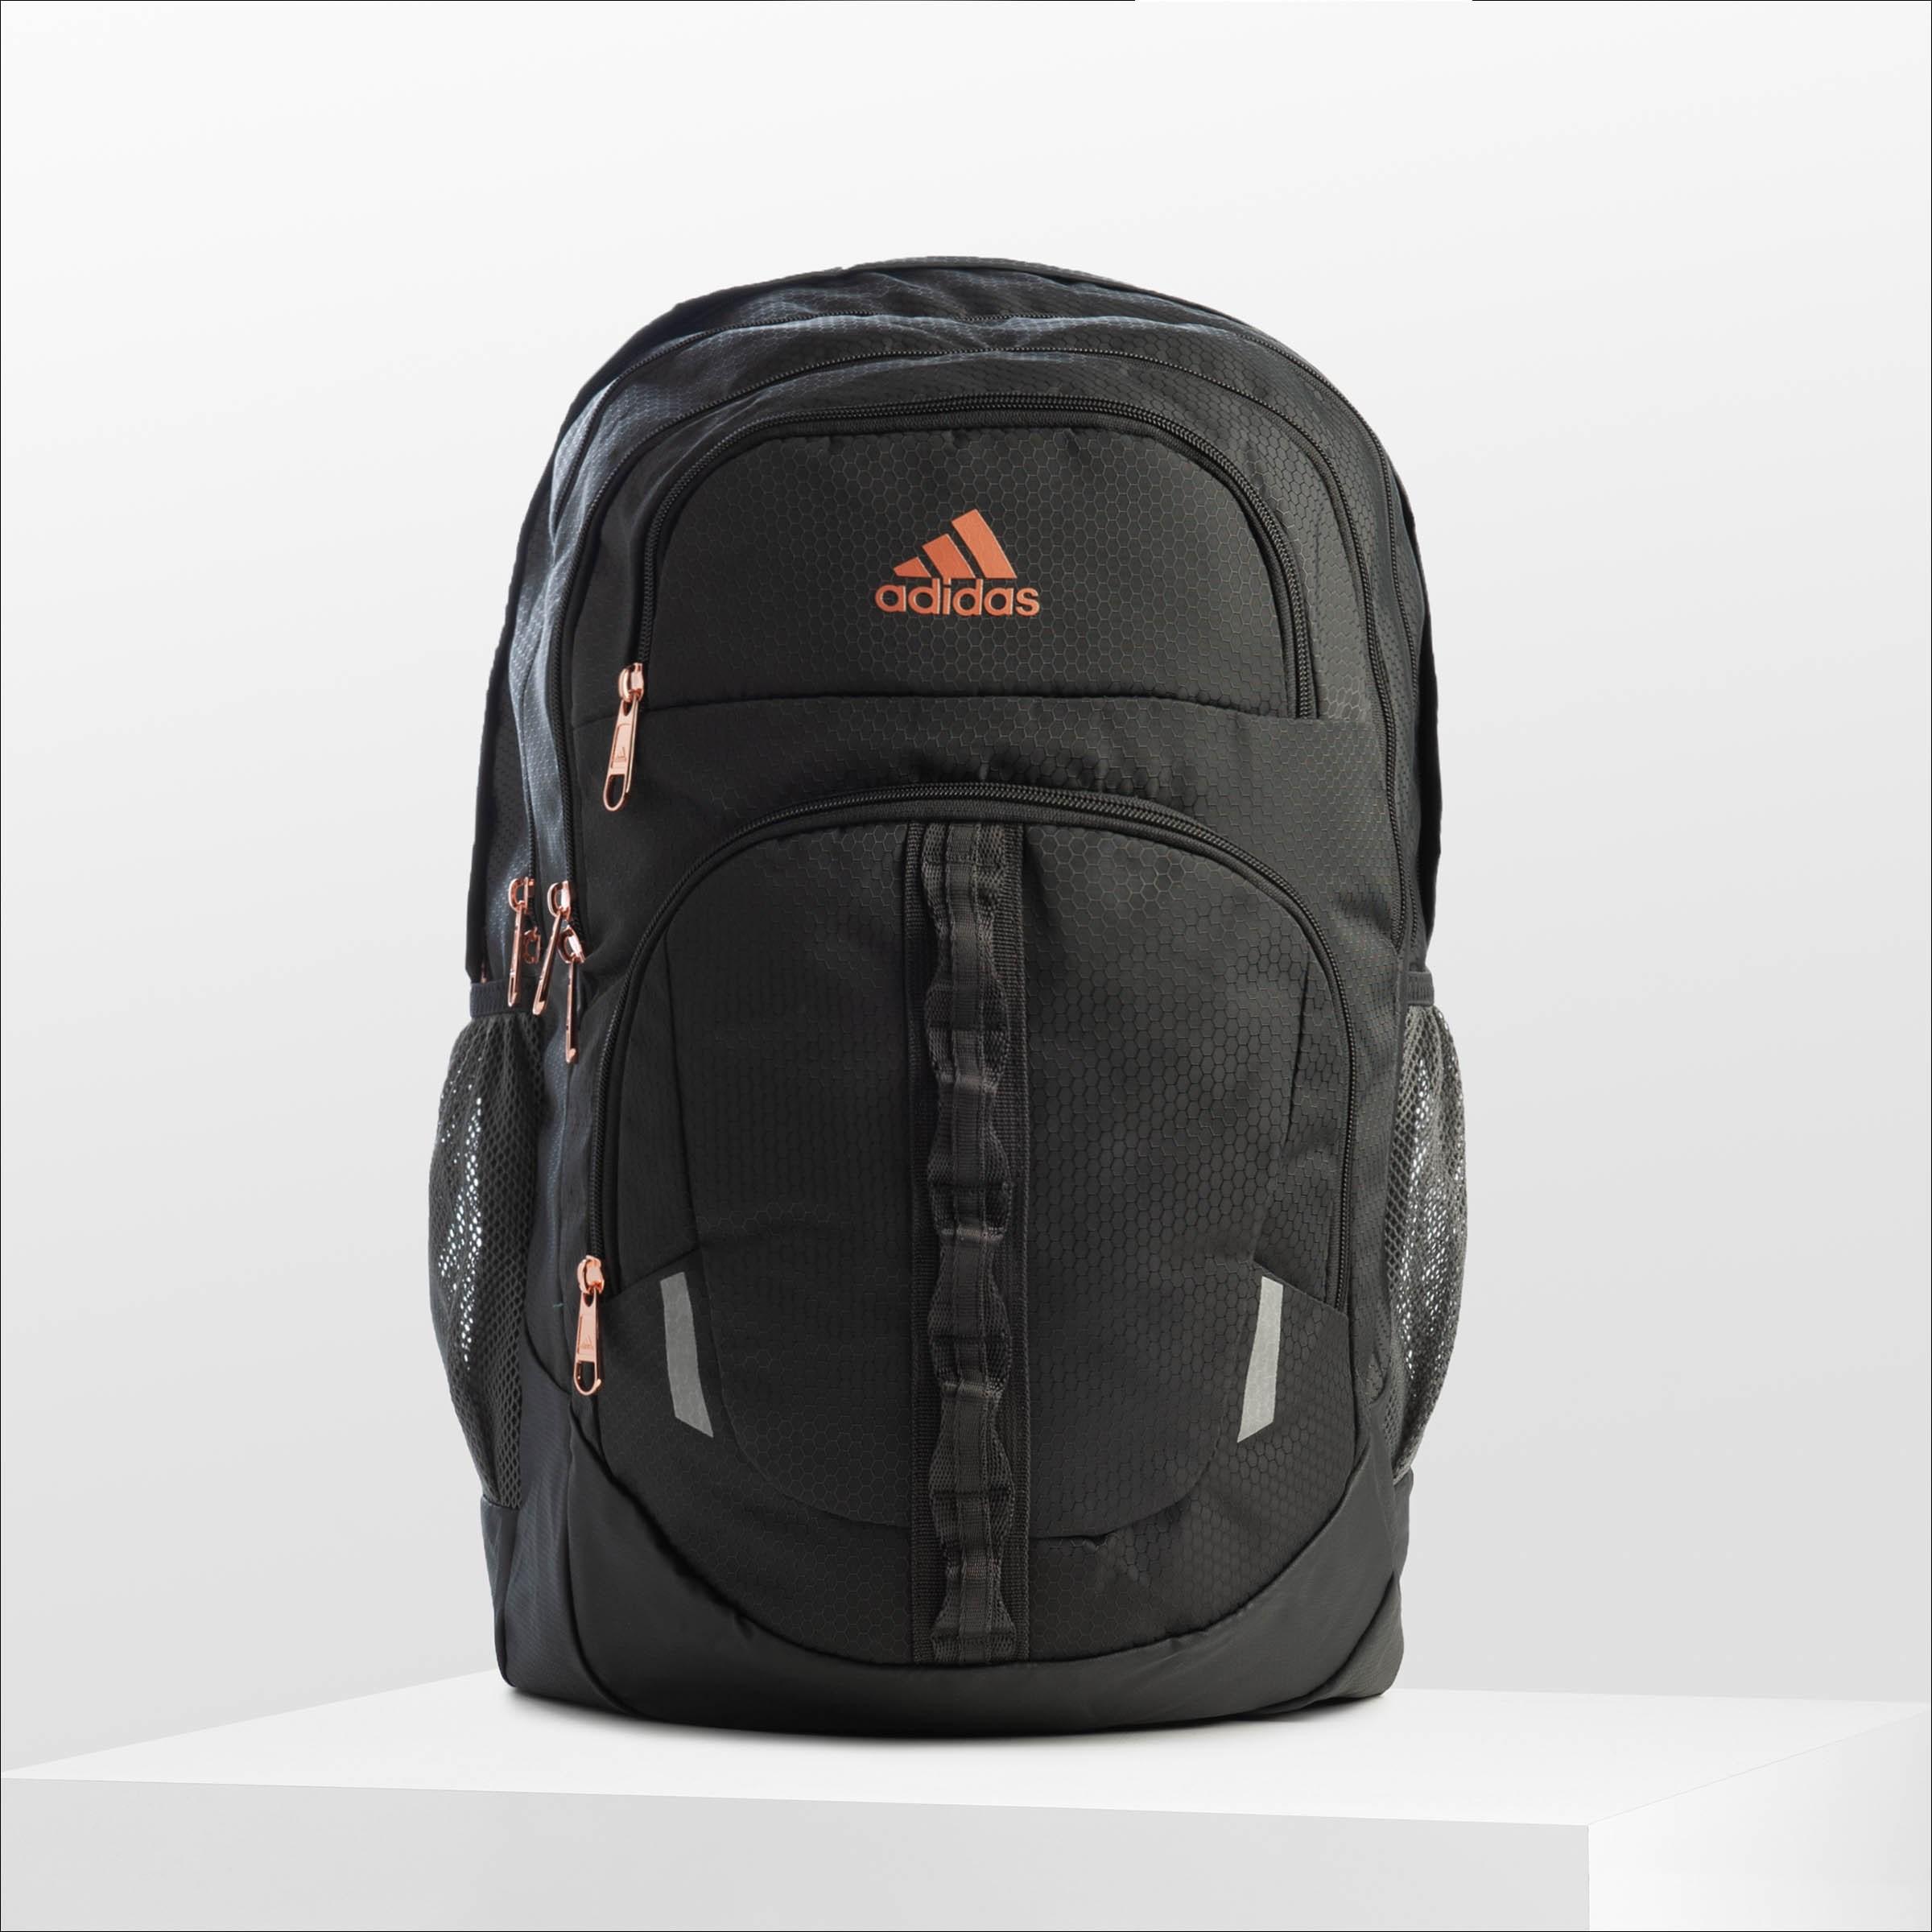 adidas prime v backpack rose gold